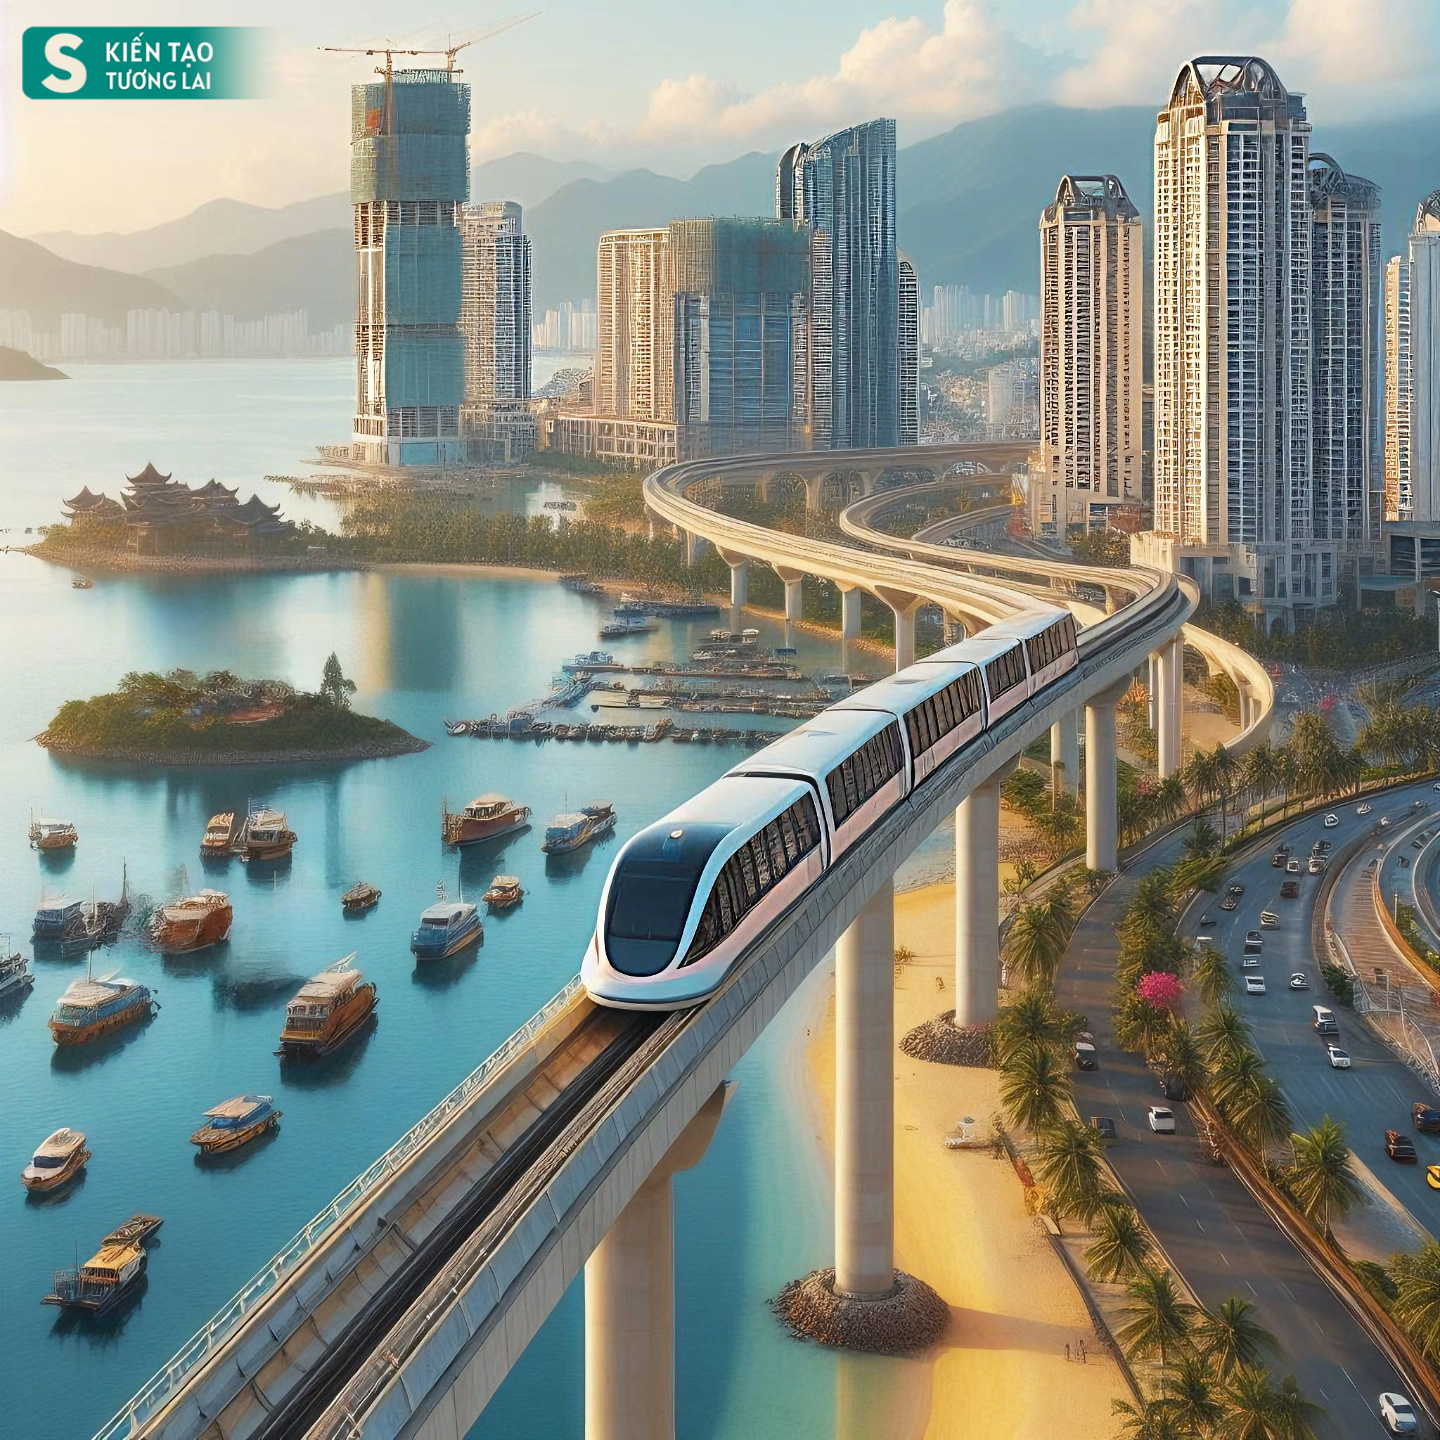 Thành phố duy nhất ở Việt Nam giáp Trung Quốc có biển, tương lai có sân bay taxi, đường sắt hiện đại- Ảnh 1.